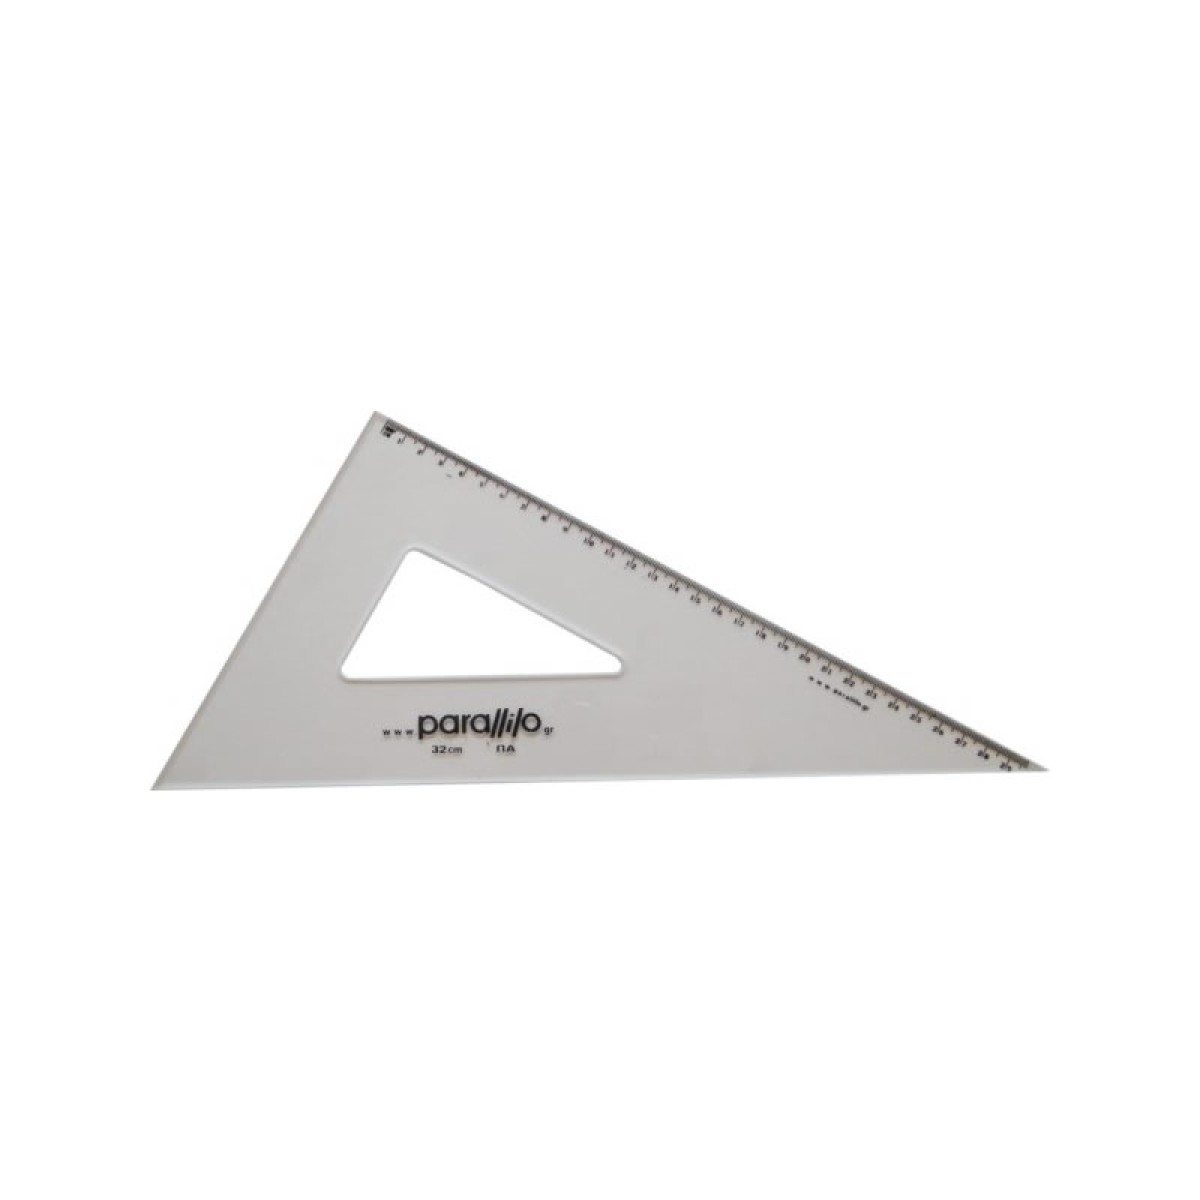 Σκαληνό Τρίγωνο 60°- 90° Parallilo 32cm με Πατούρα και Αρίθμηση